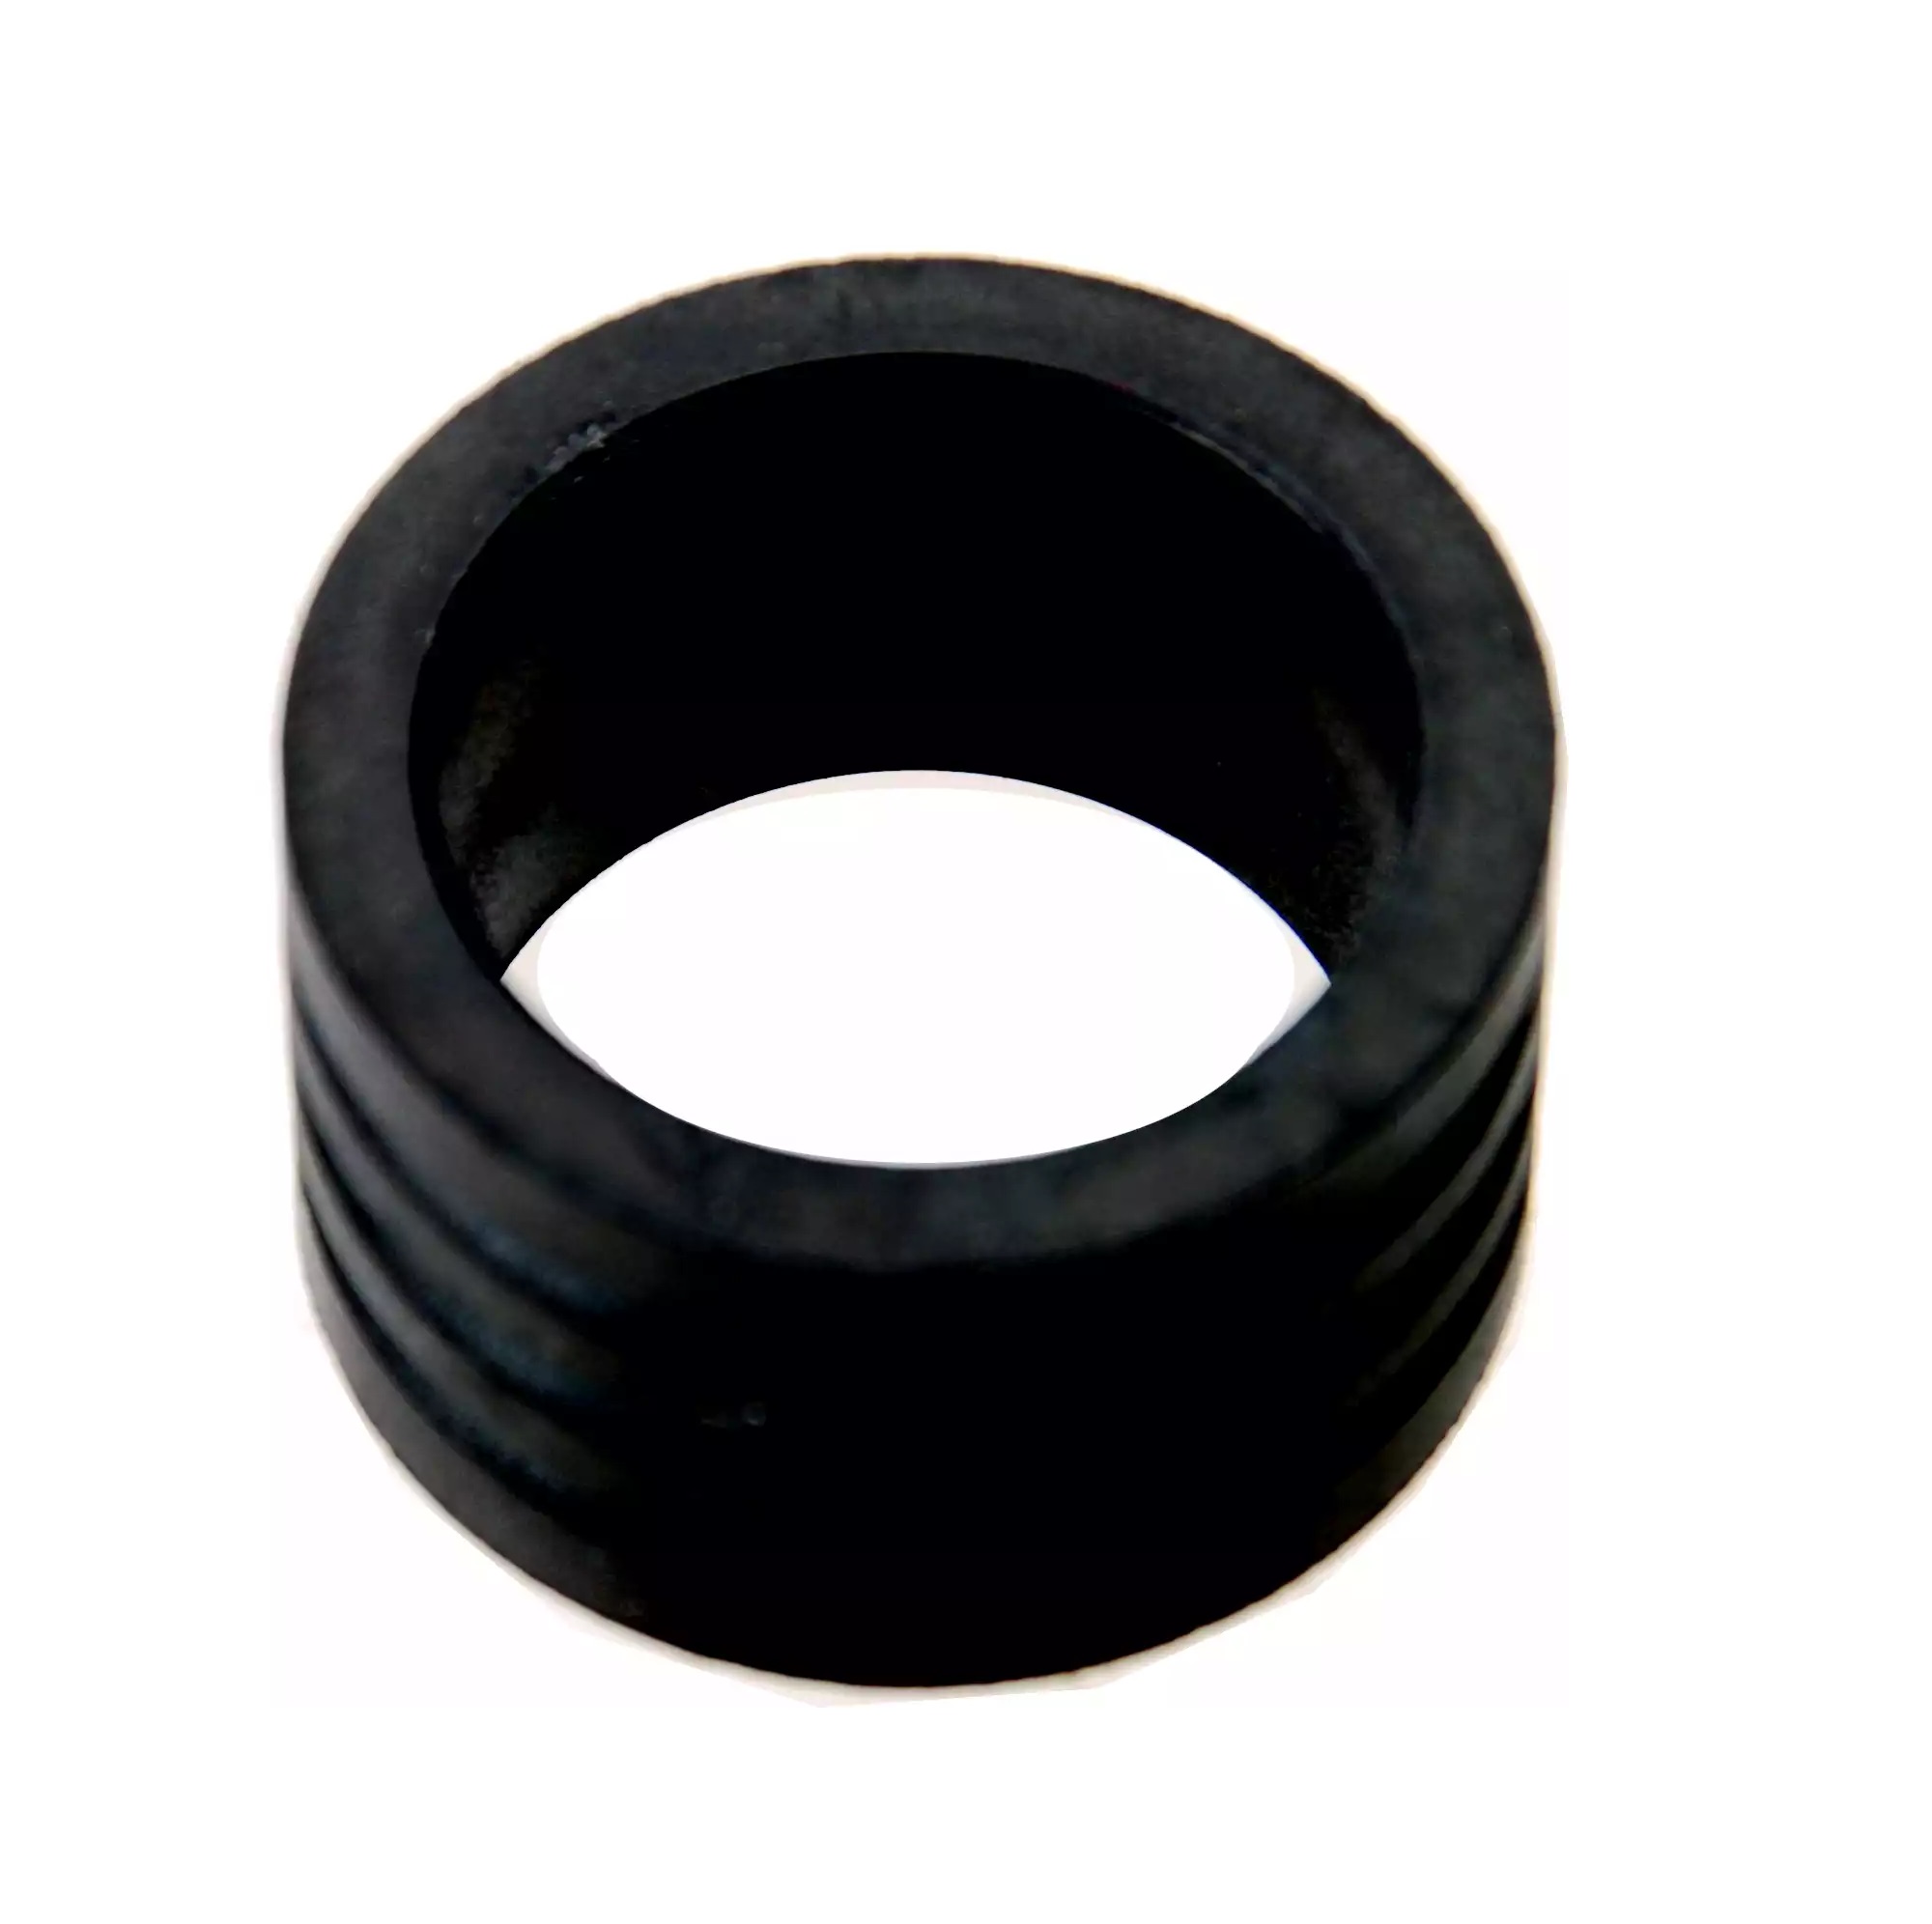 Krúžok gumový pre univerzálny adaptér na testovanie chladiaceho systému, 40 - 45 mm, BGS 8599-2